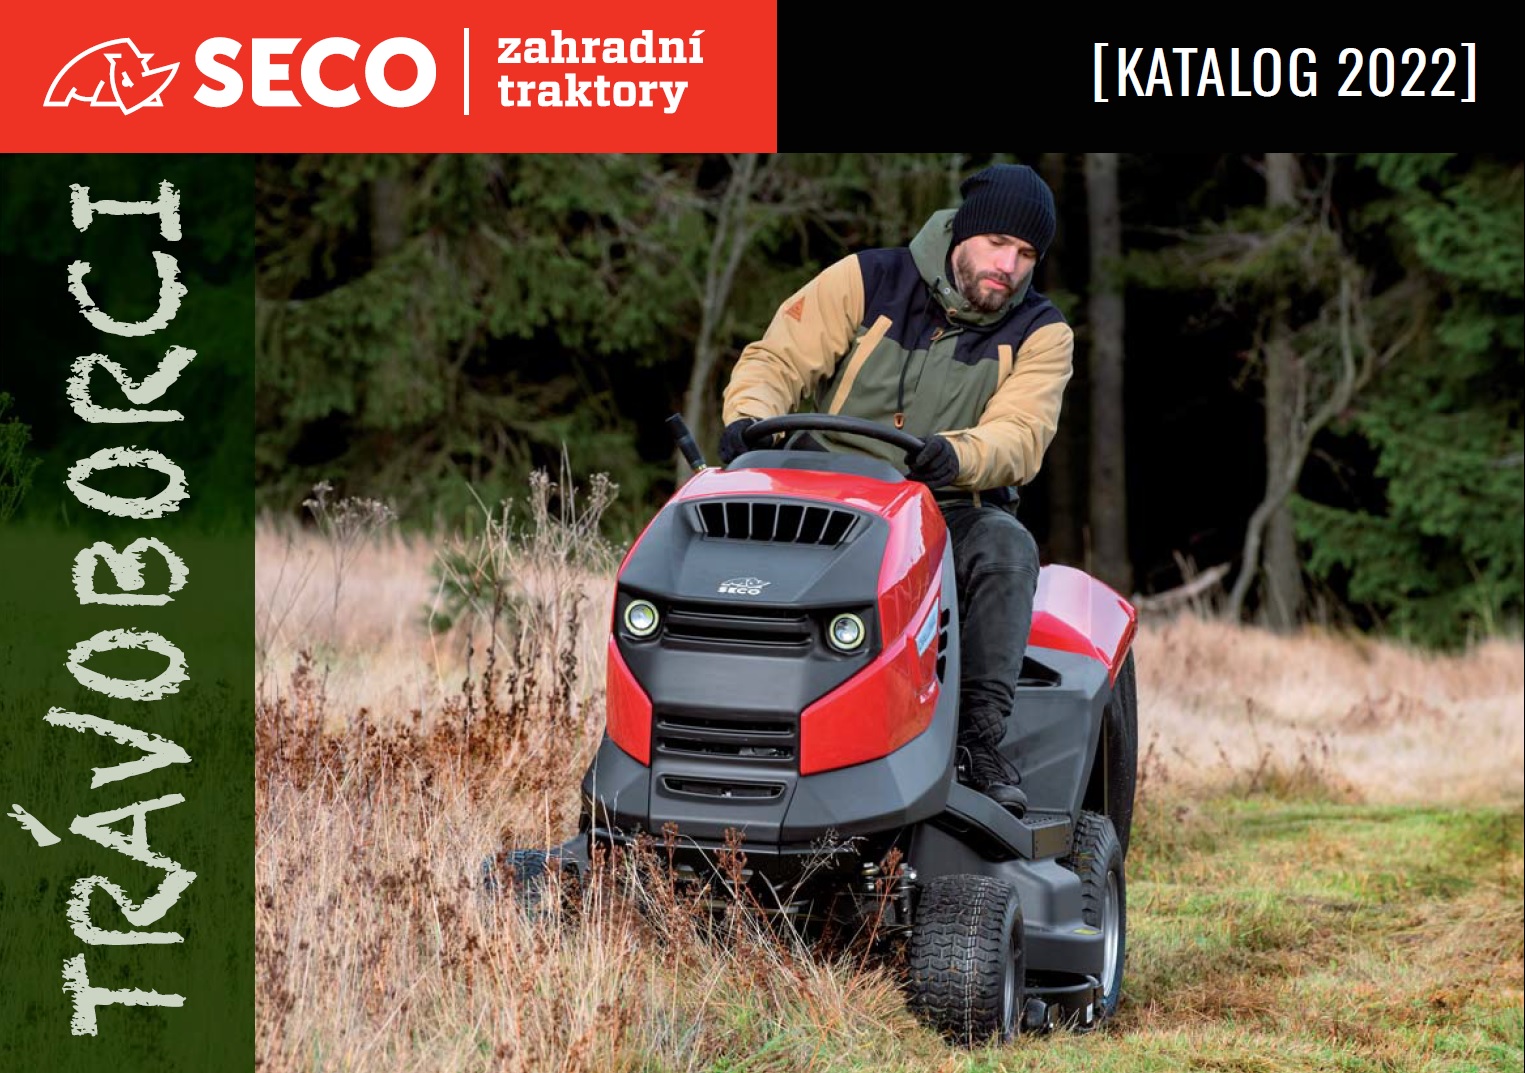 Katalog zahradní traktory Seco Industries